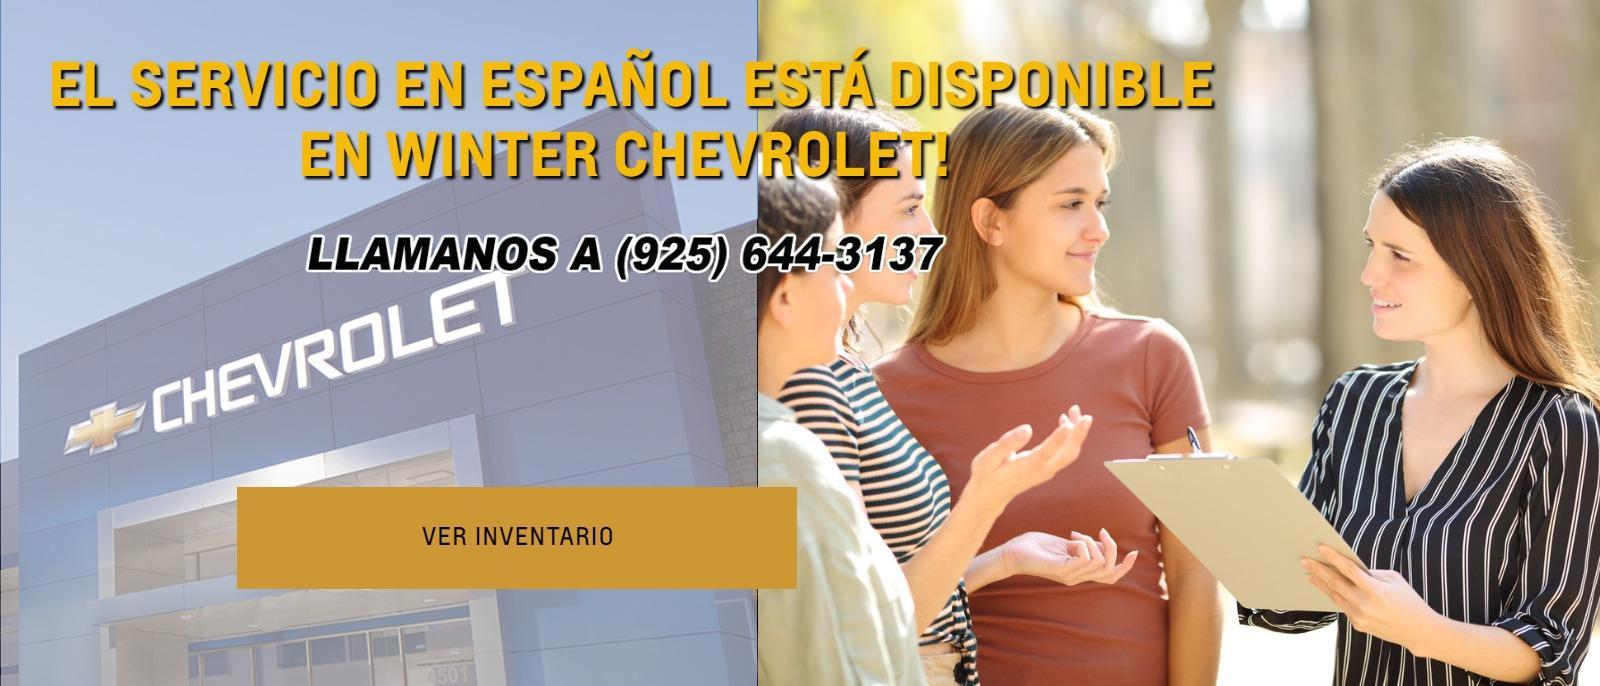 El servicio espanol esta disponible en Winter Chevrolet! Ver inventario.